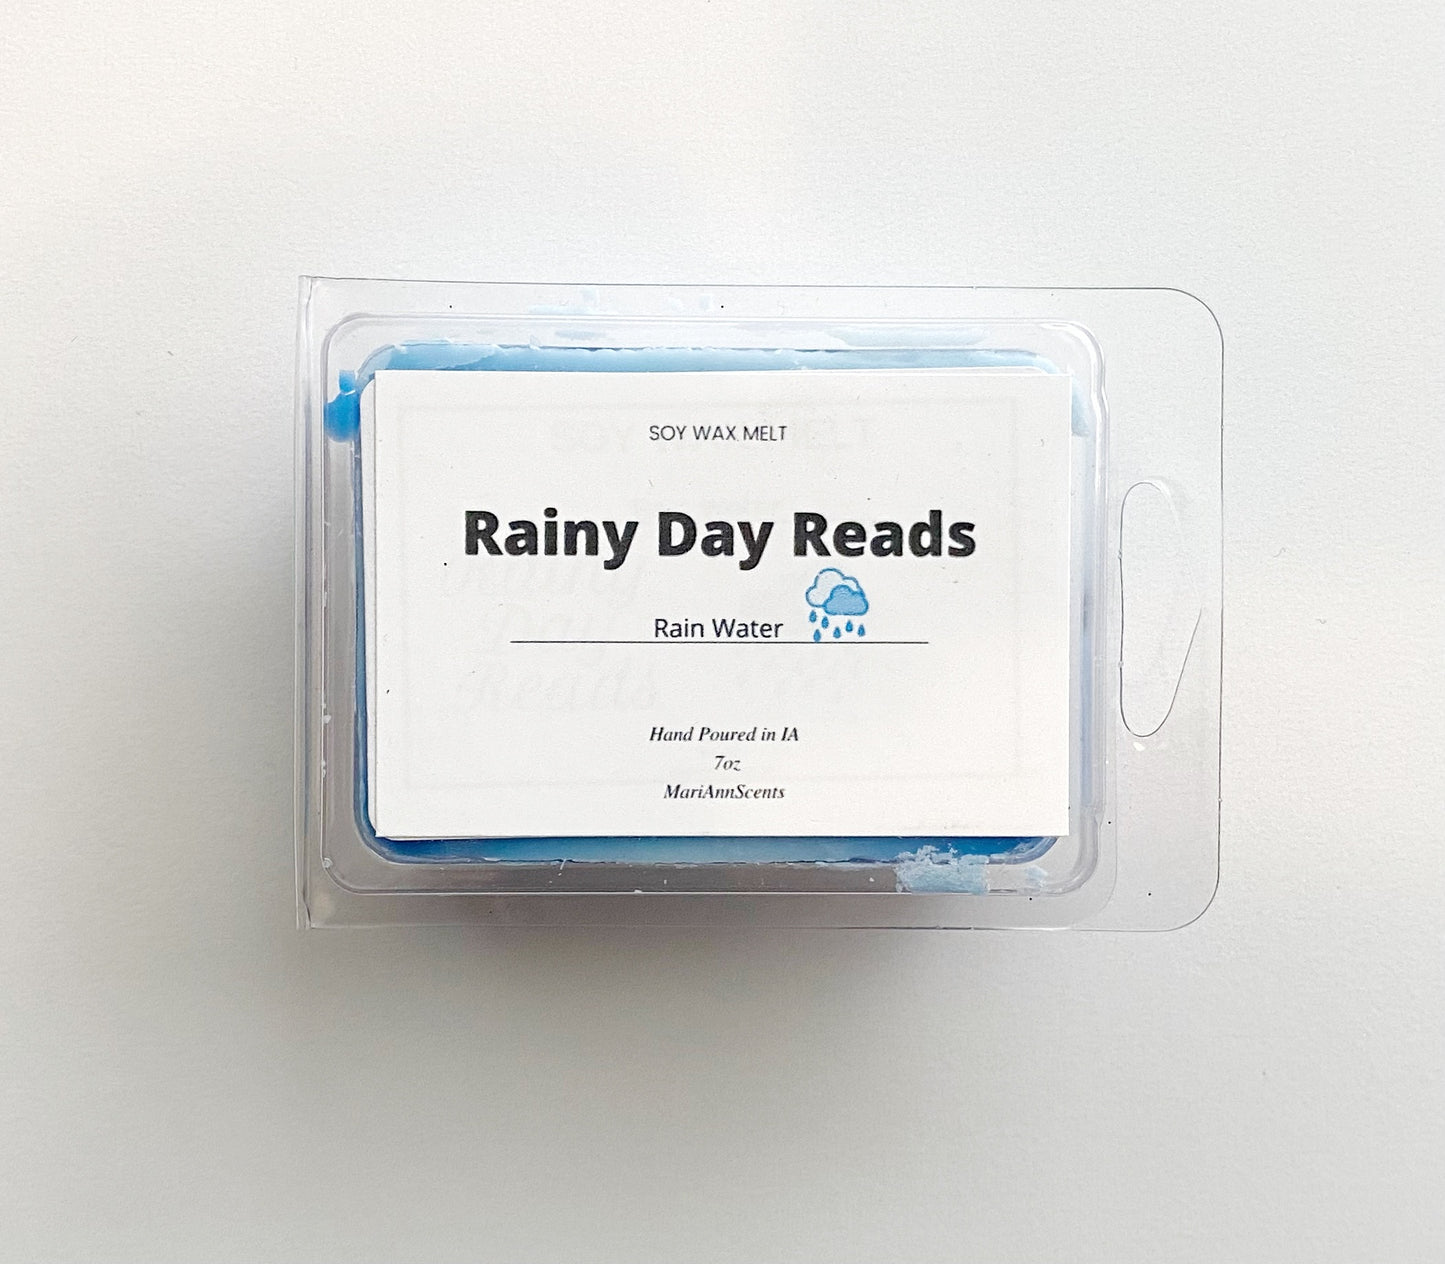 Rainy Day Reads Wax Melt